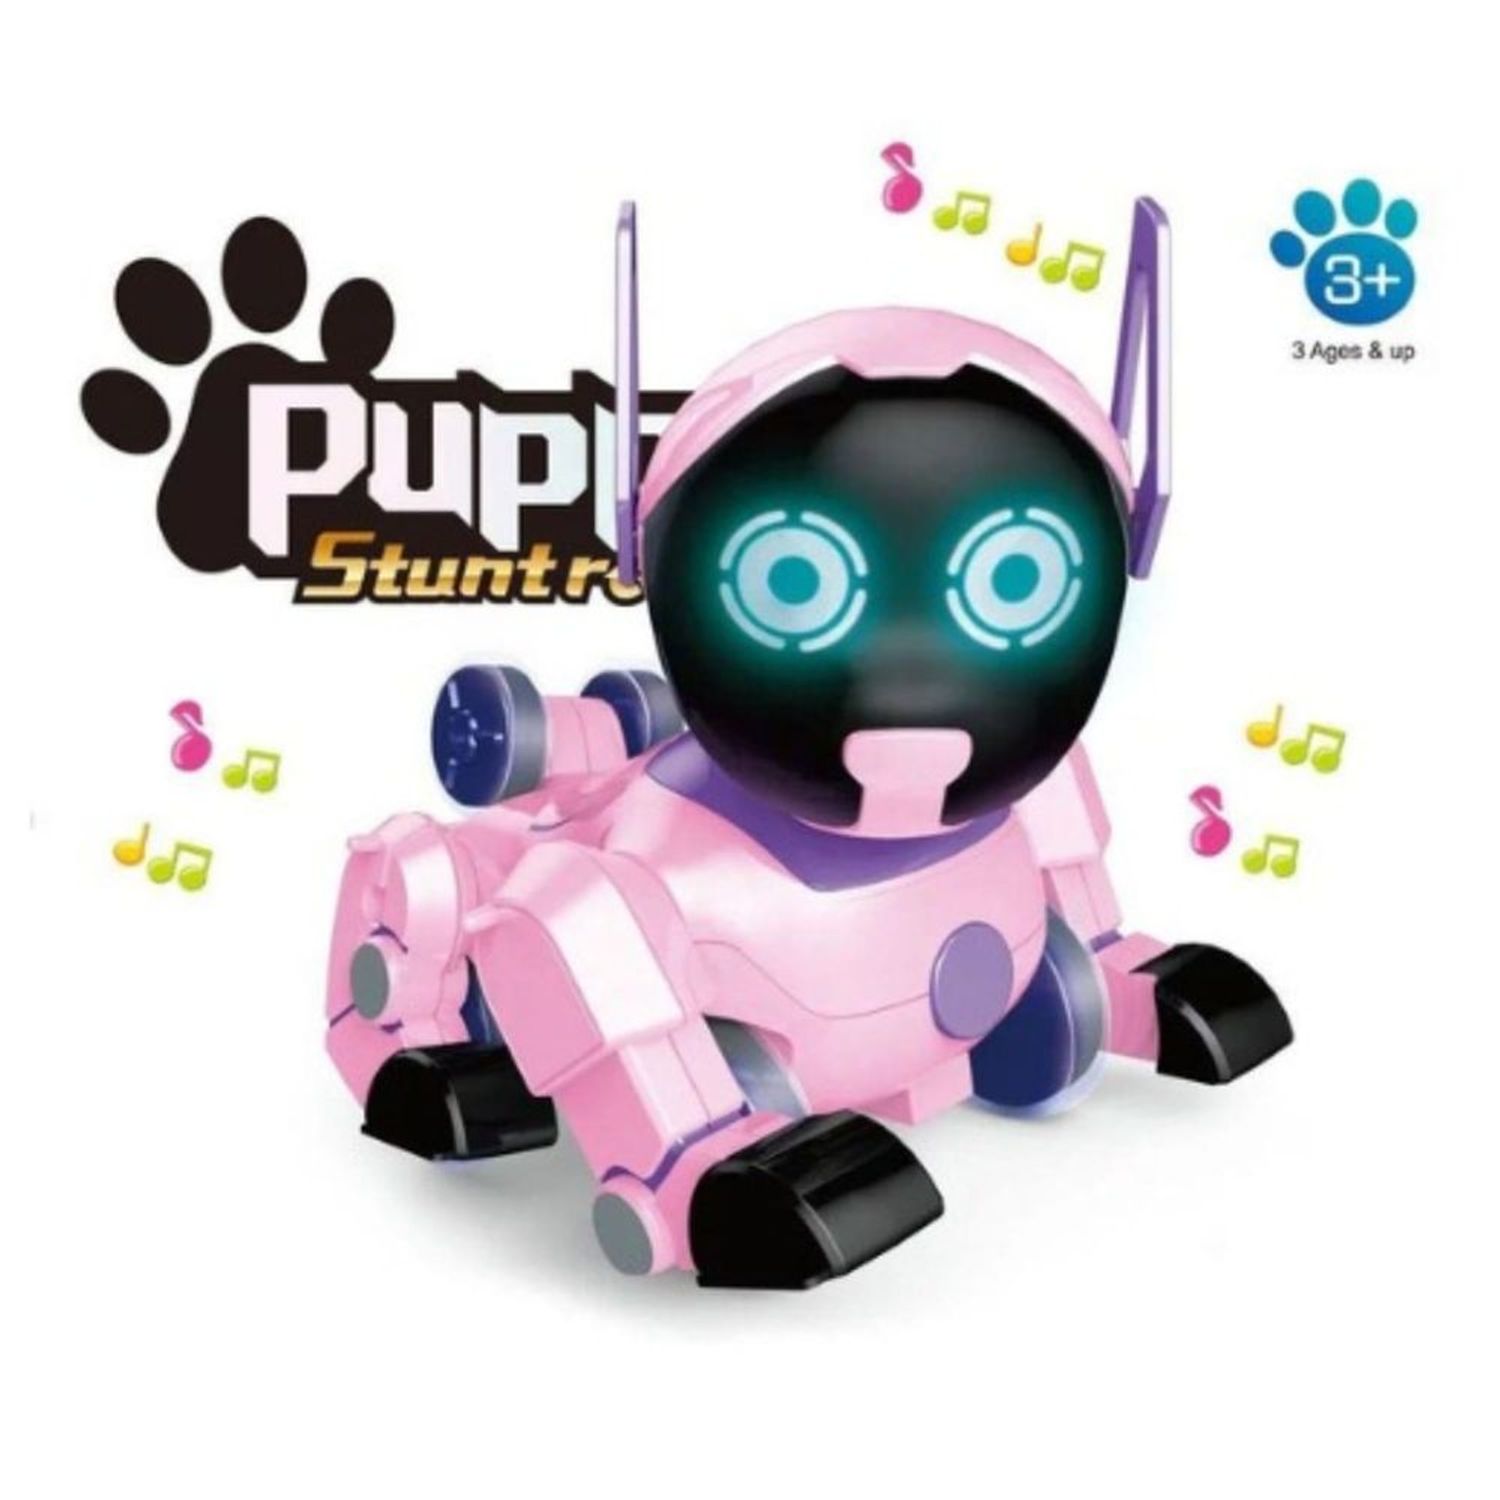 Perro Robot Inteligente Color Celeste Multifuncional con Sonido y Luces I  Oechsle - Oechsle